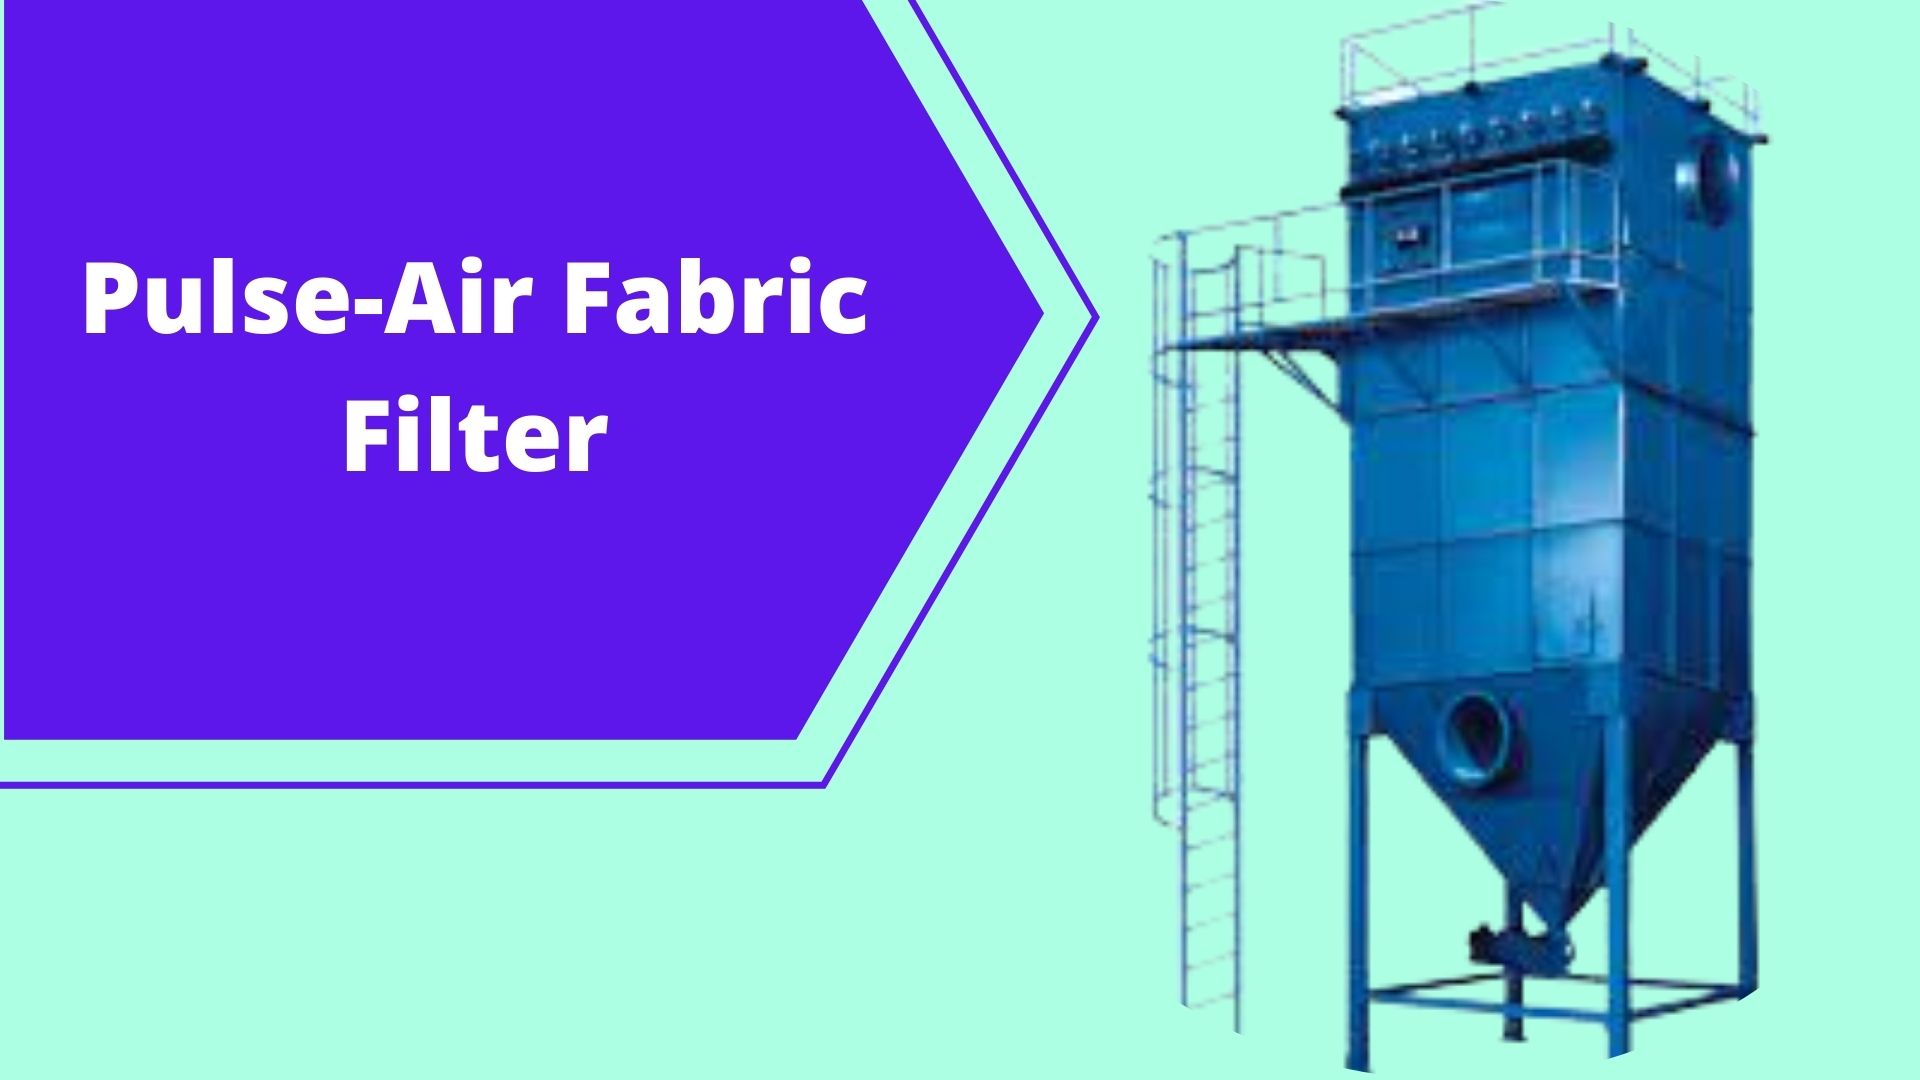 Pulse-Air Fabric Filter